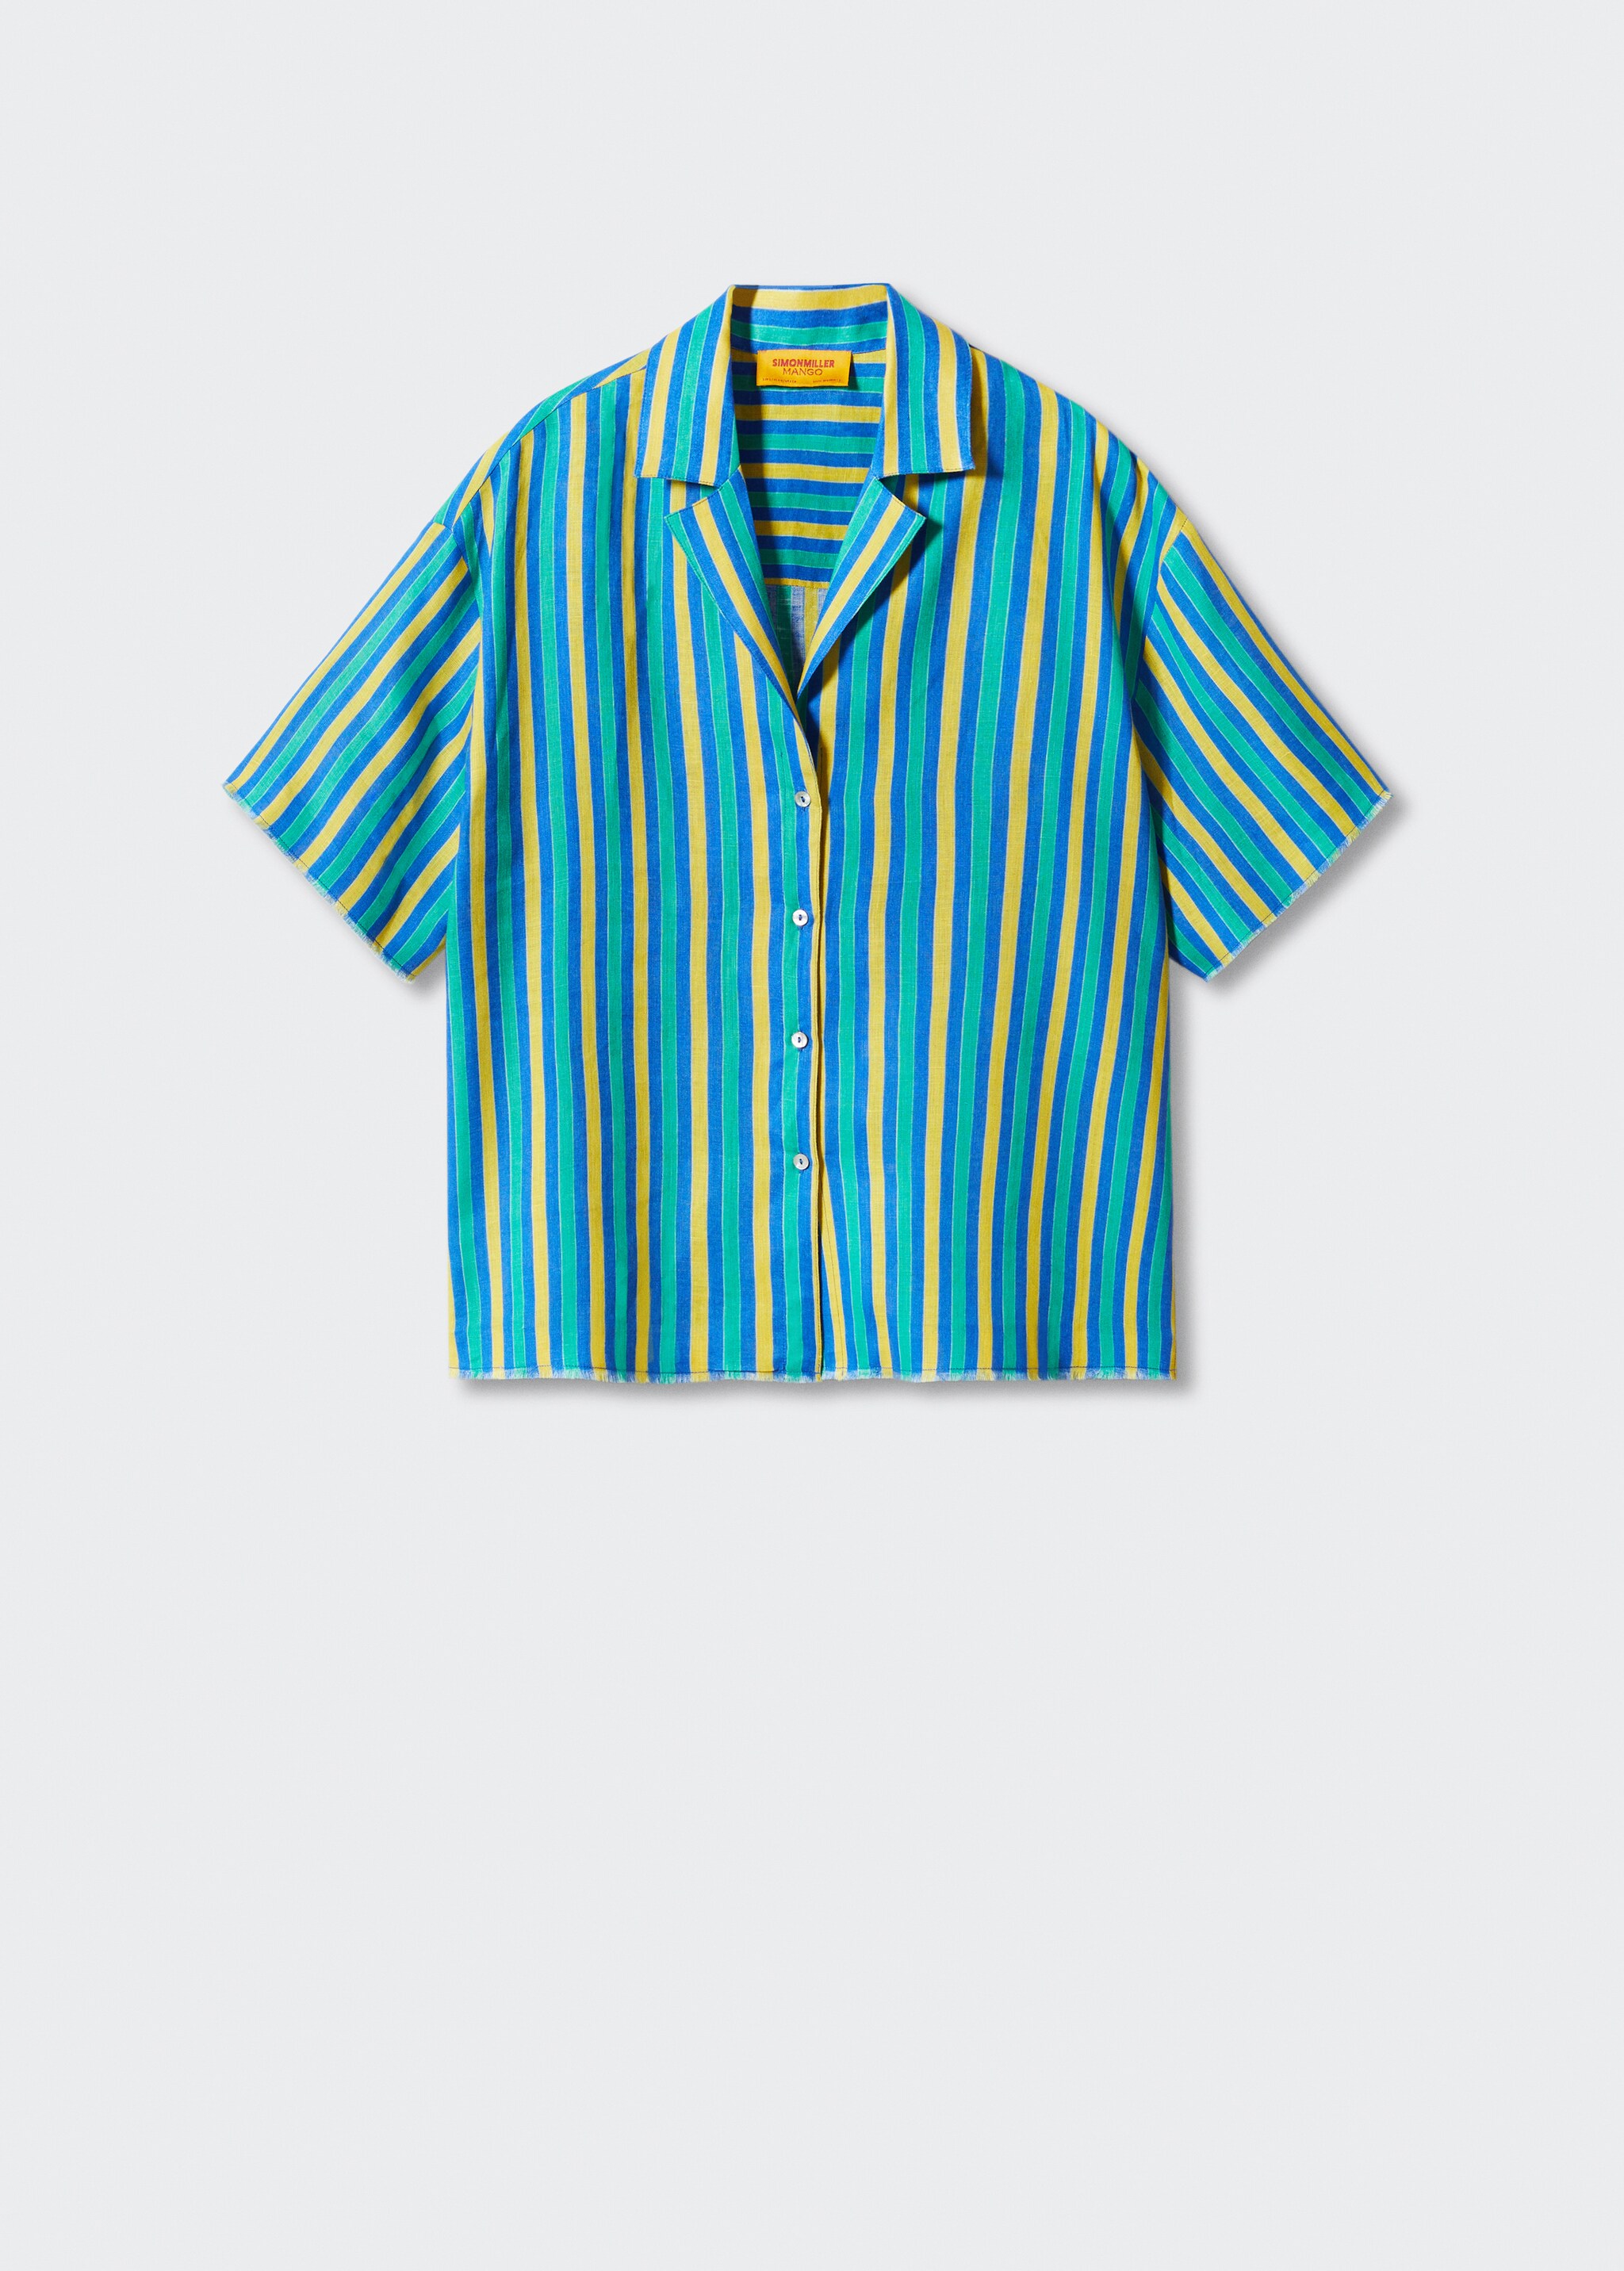 Camicia lino righe multicolore - Articolo senza modello